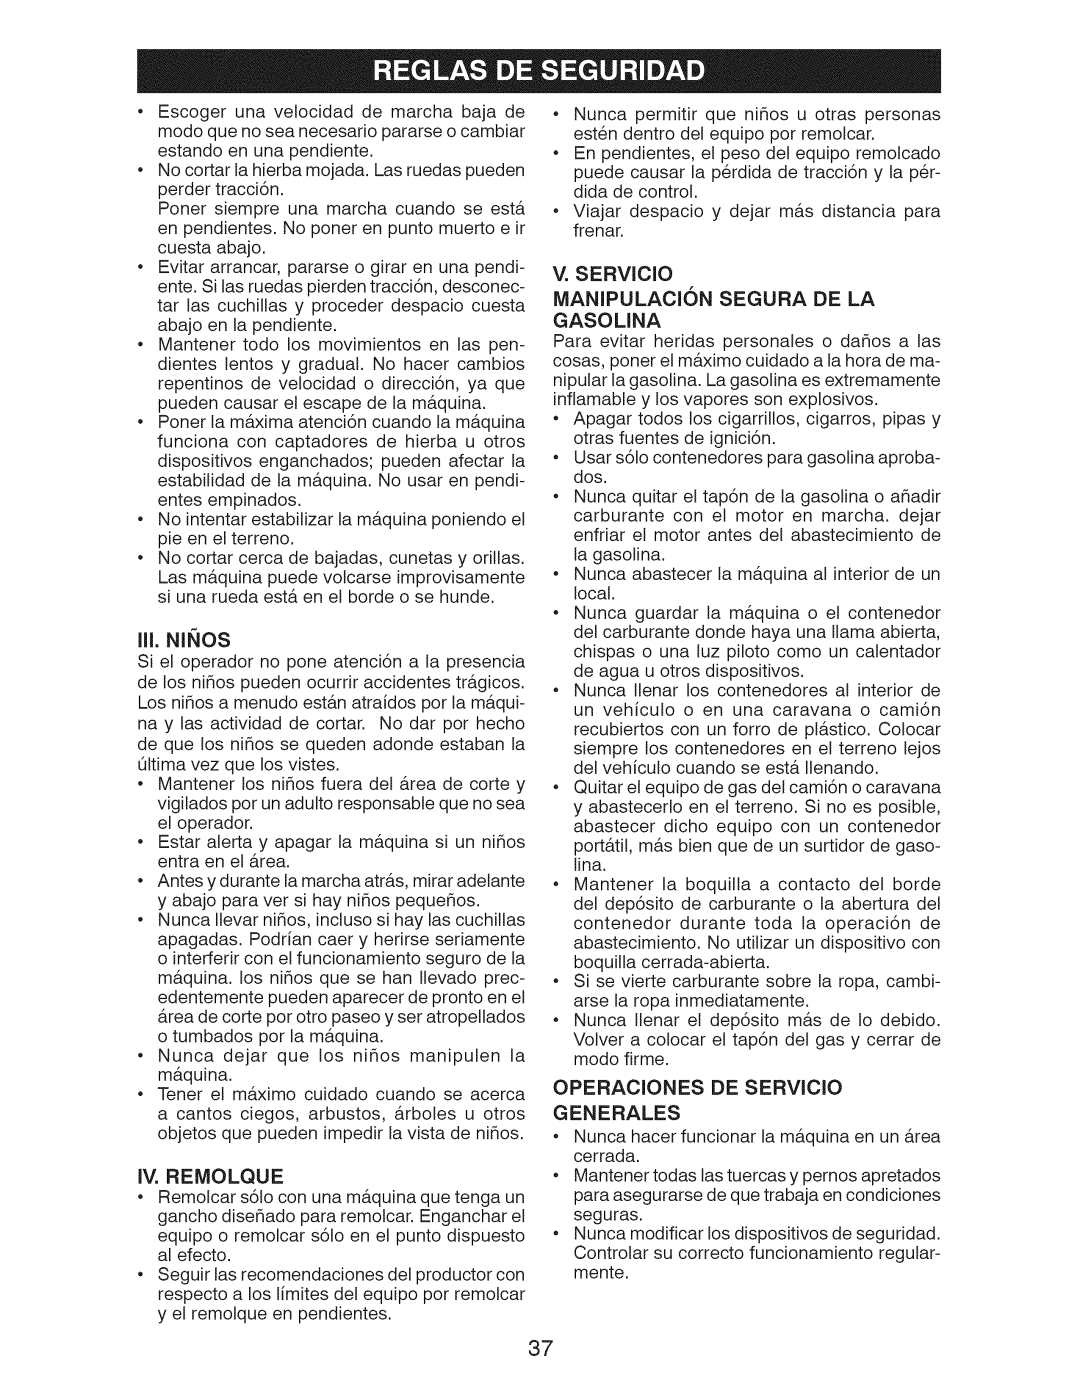 Craftsman 917.28955 owner manual Iii.Nii Os, Manipulacion Segura De La, V. SERVlCIO, Gasolina, Generales 